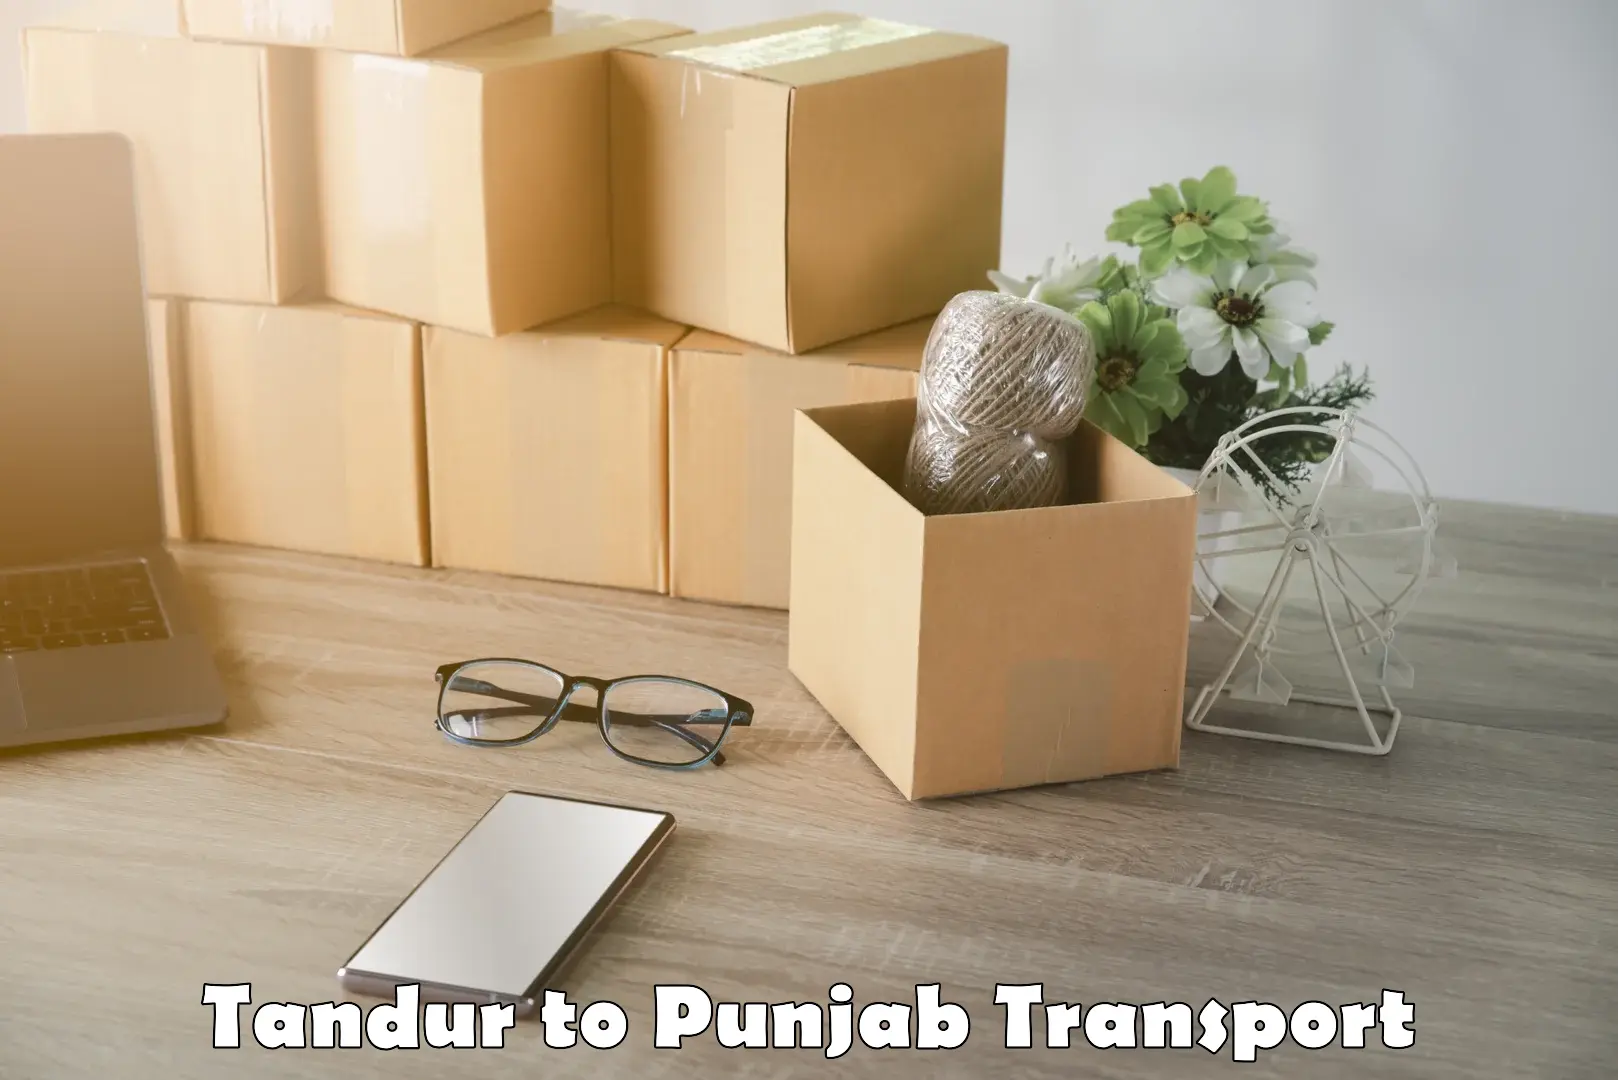 Interstate goods transport in Tandur to Punjab